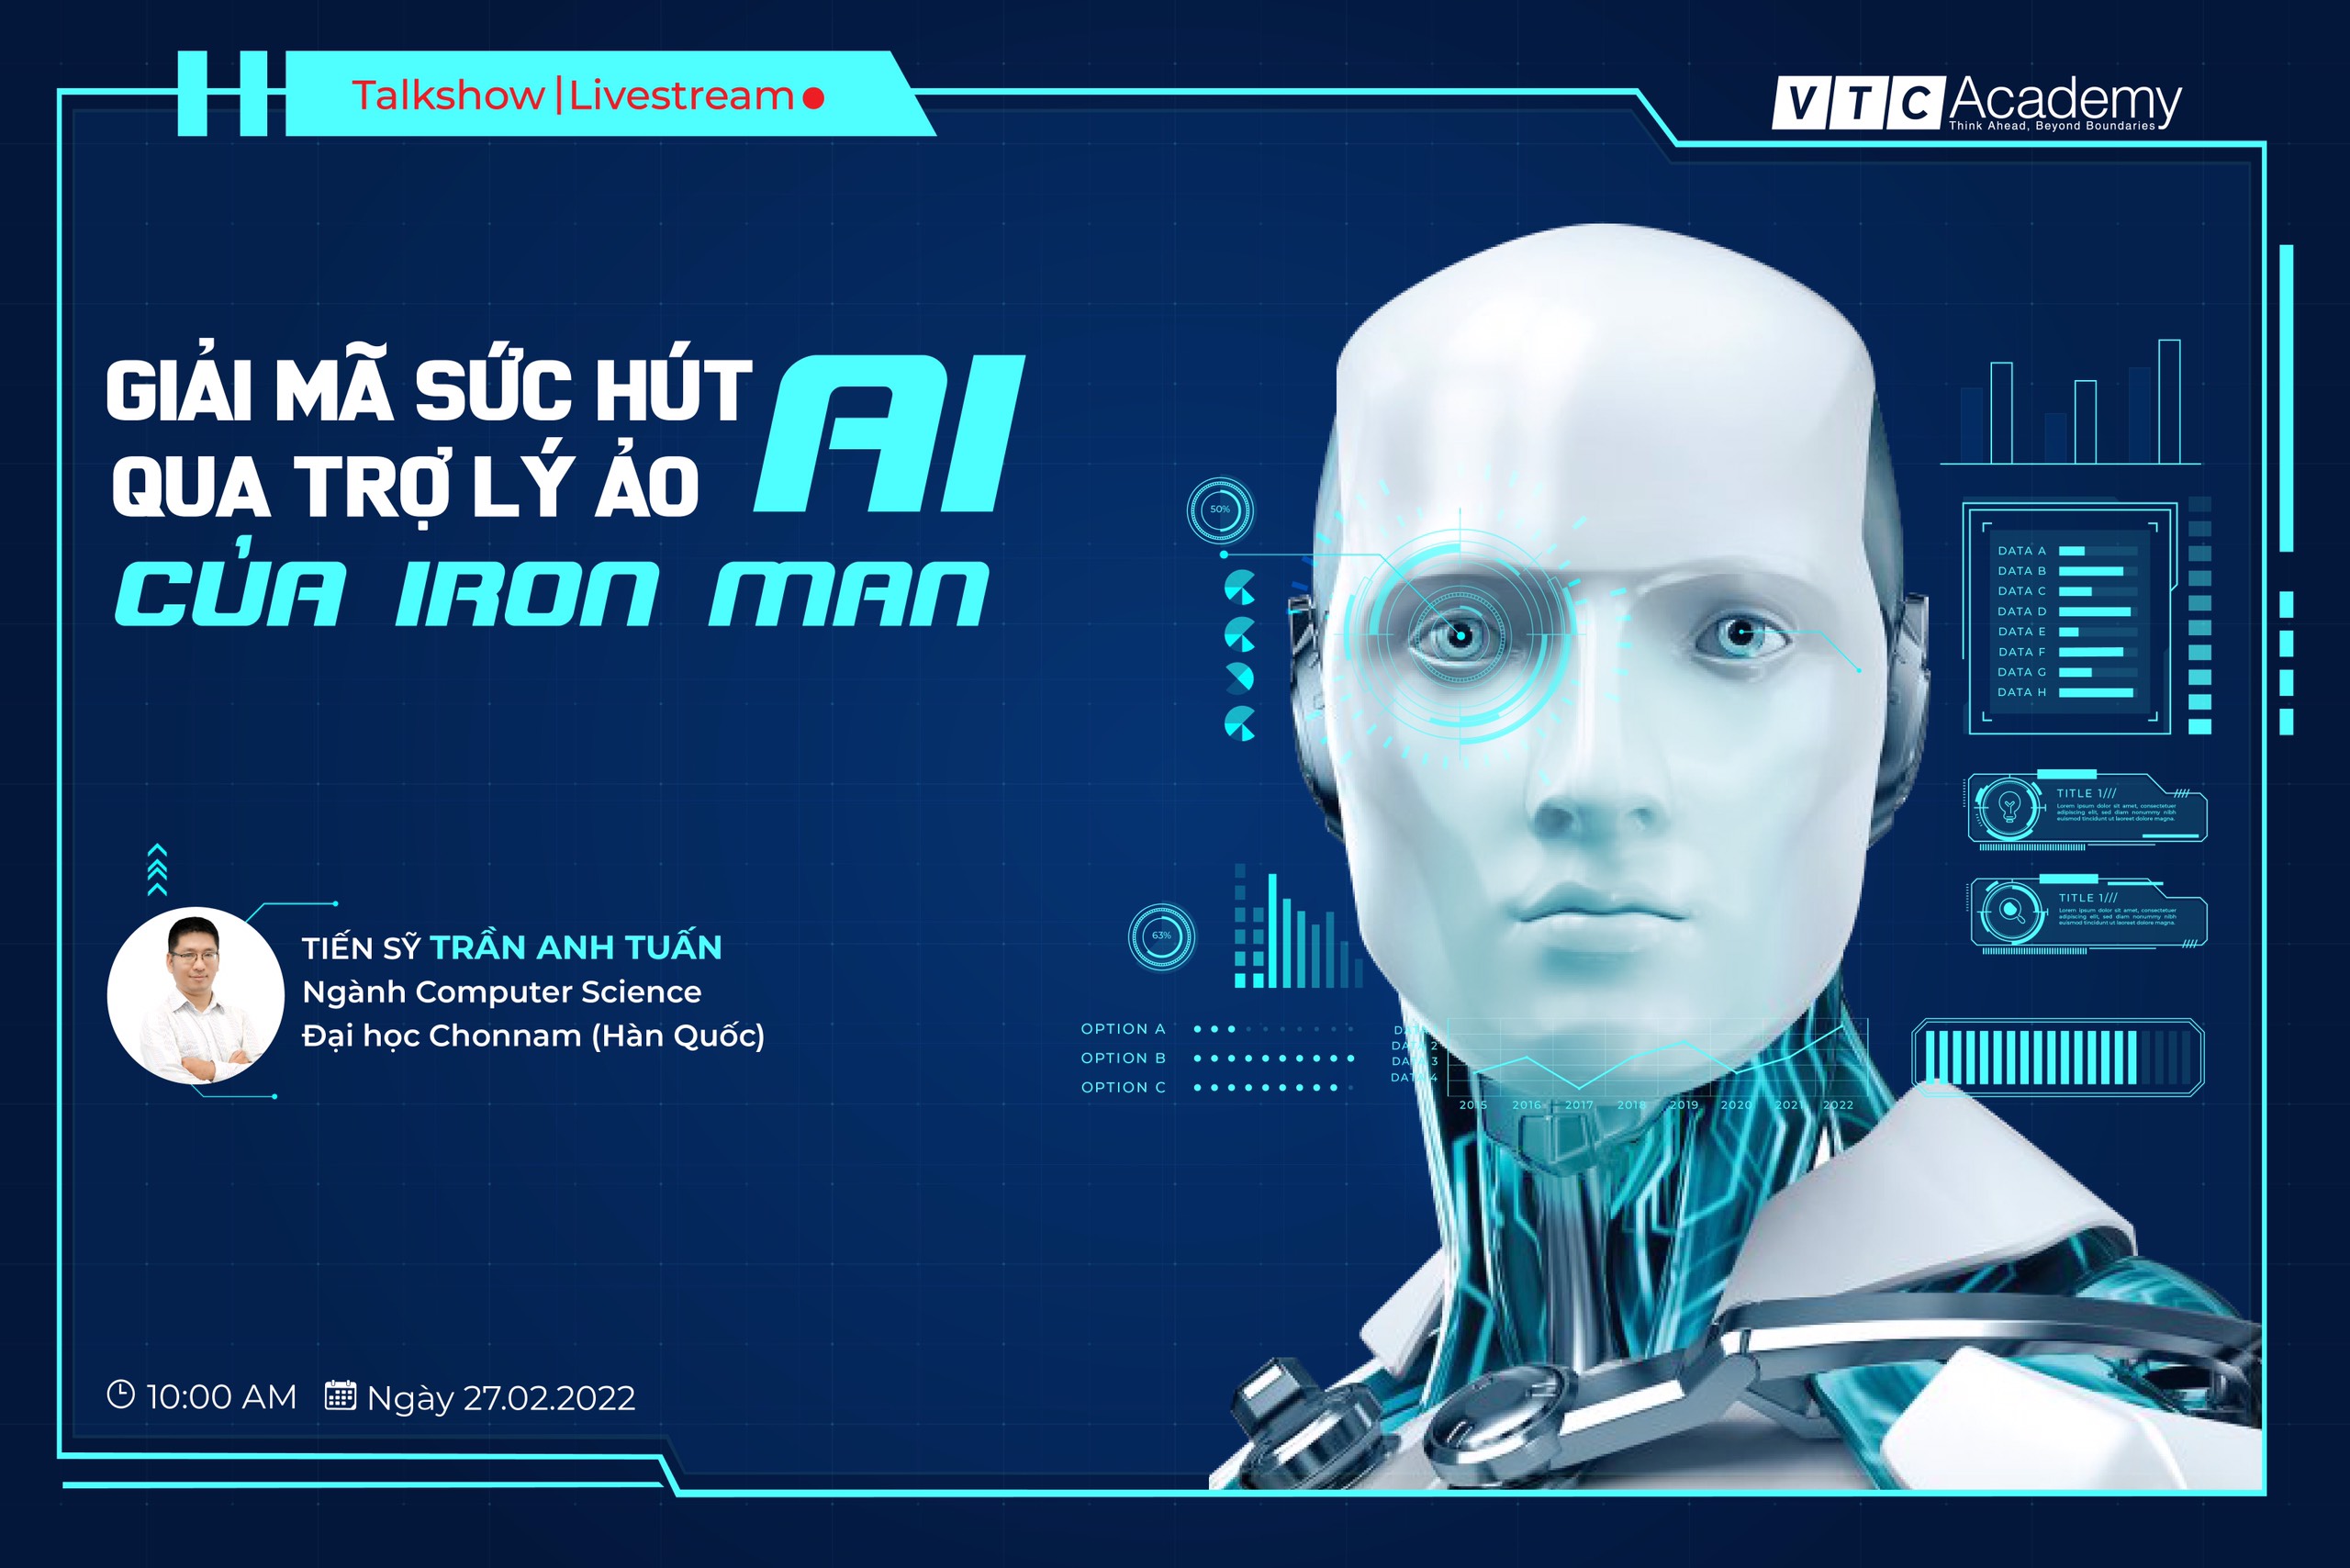 Talkshow trực tuyến: “Giải mã sức hút AI qua trợ lý ảo của Iron Man”